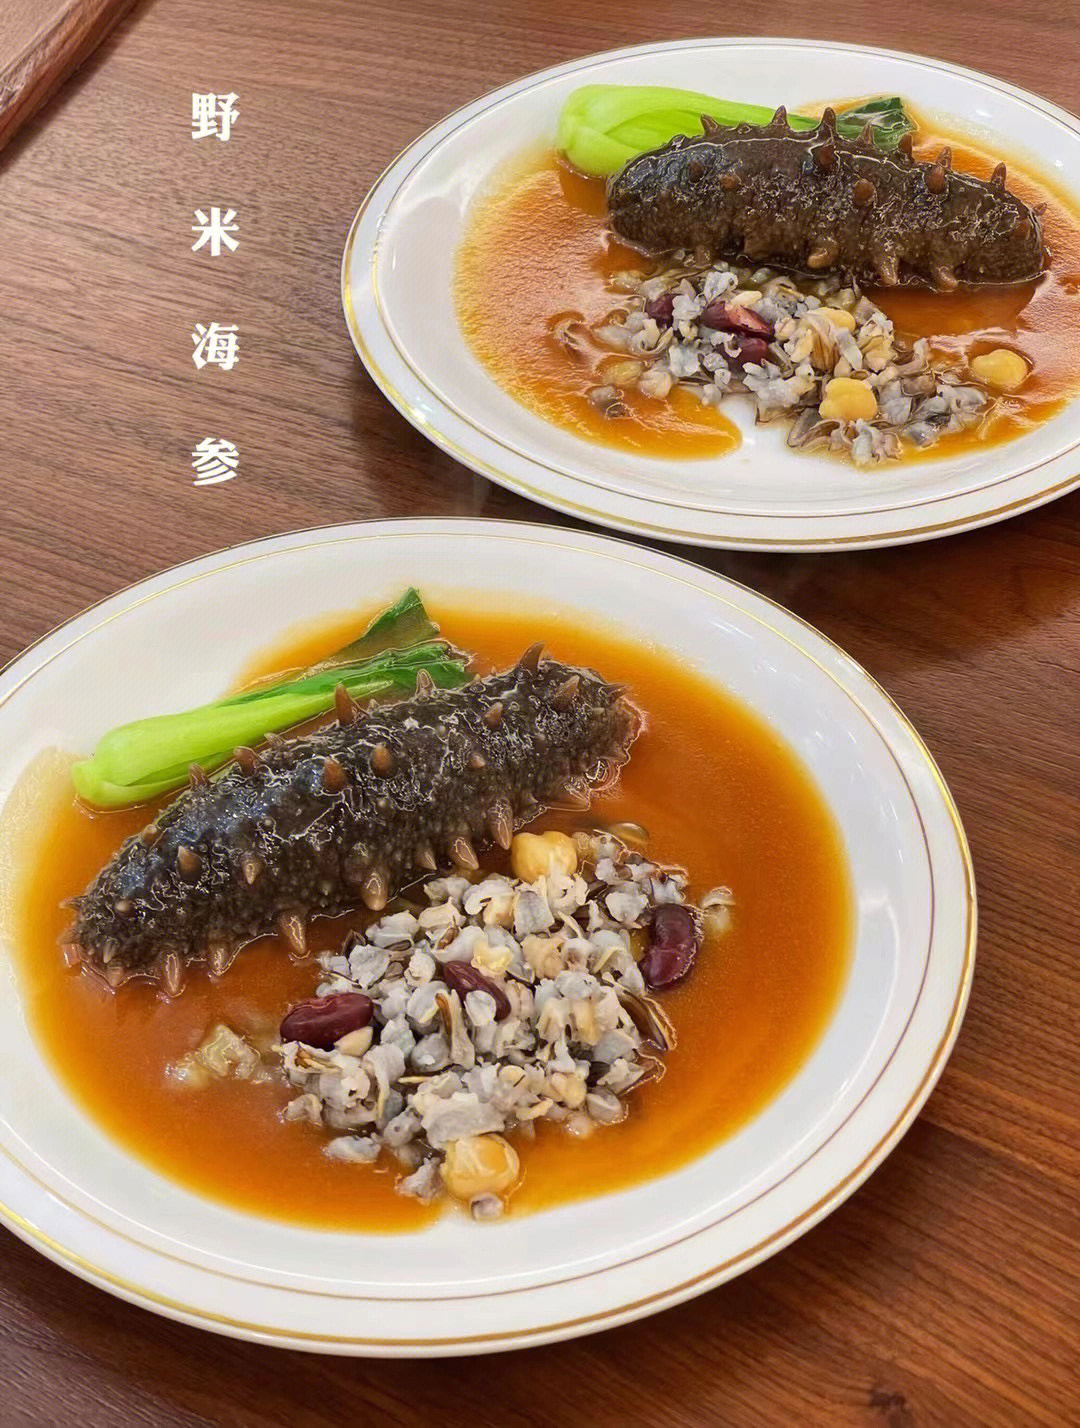 海参很多种做法以下吃法特别受欢迎:野米烩海参:打火锅 蘸芥末酱油